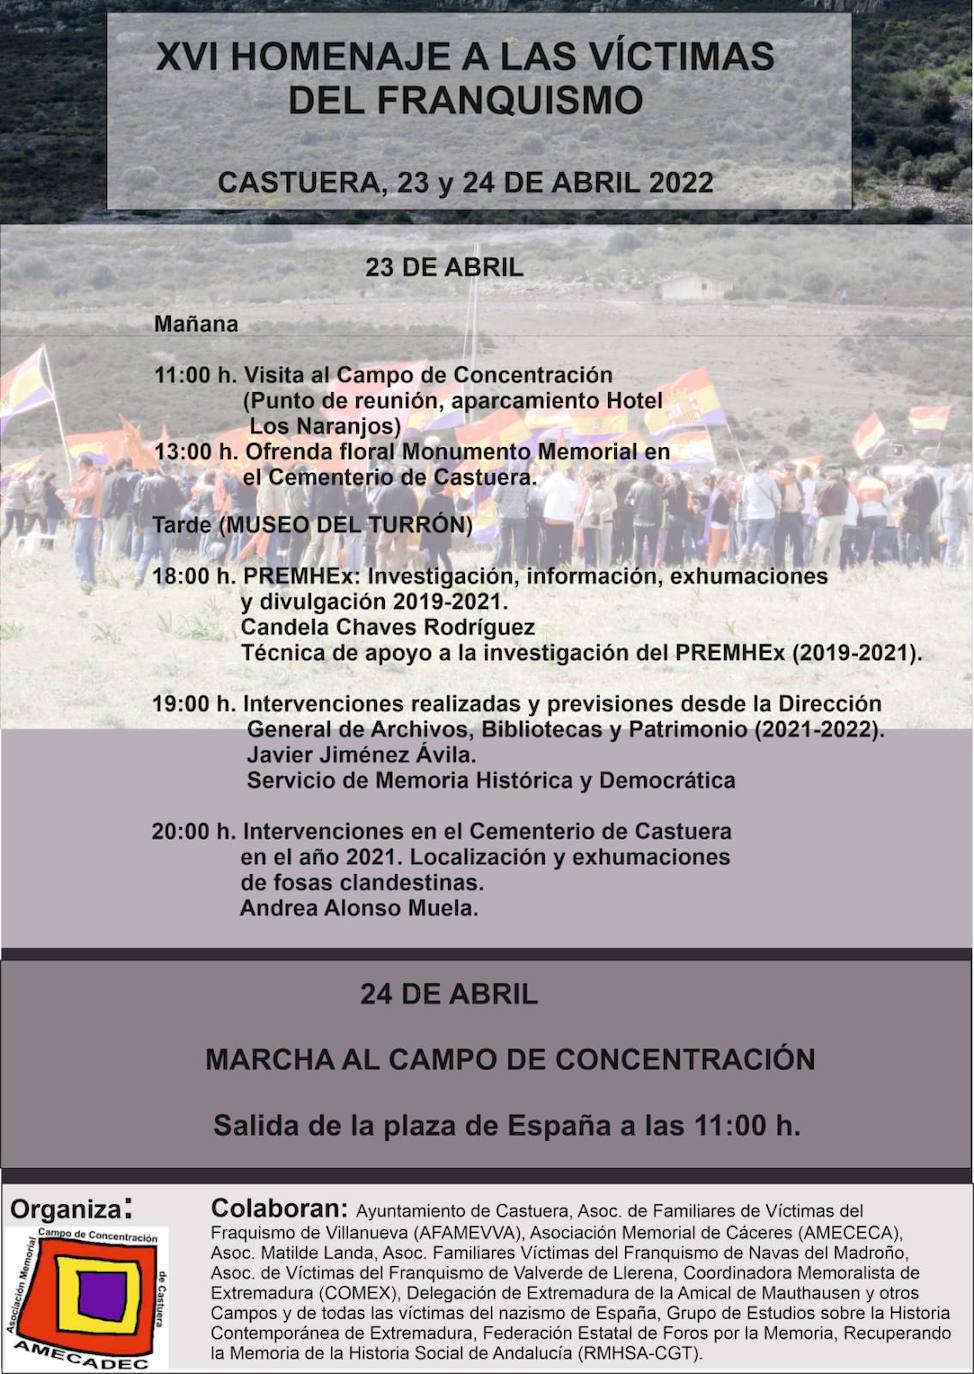 El XVI Homenaje a las Víctimas del Franquismo se celebrará los días 23 y 24 de abril